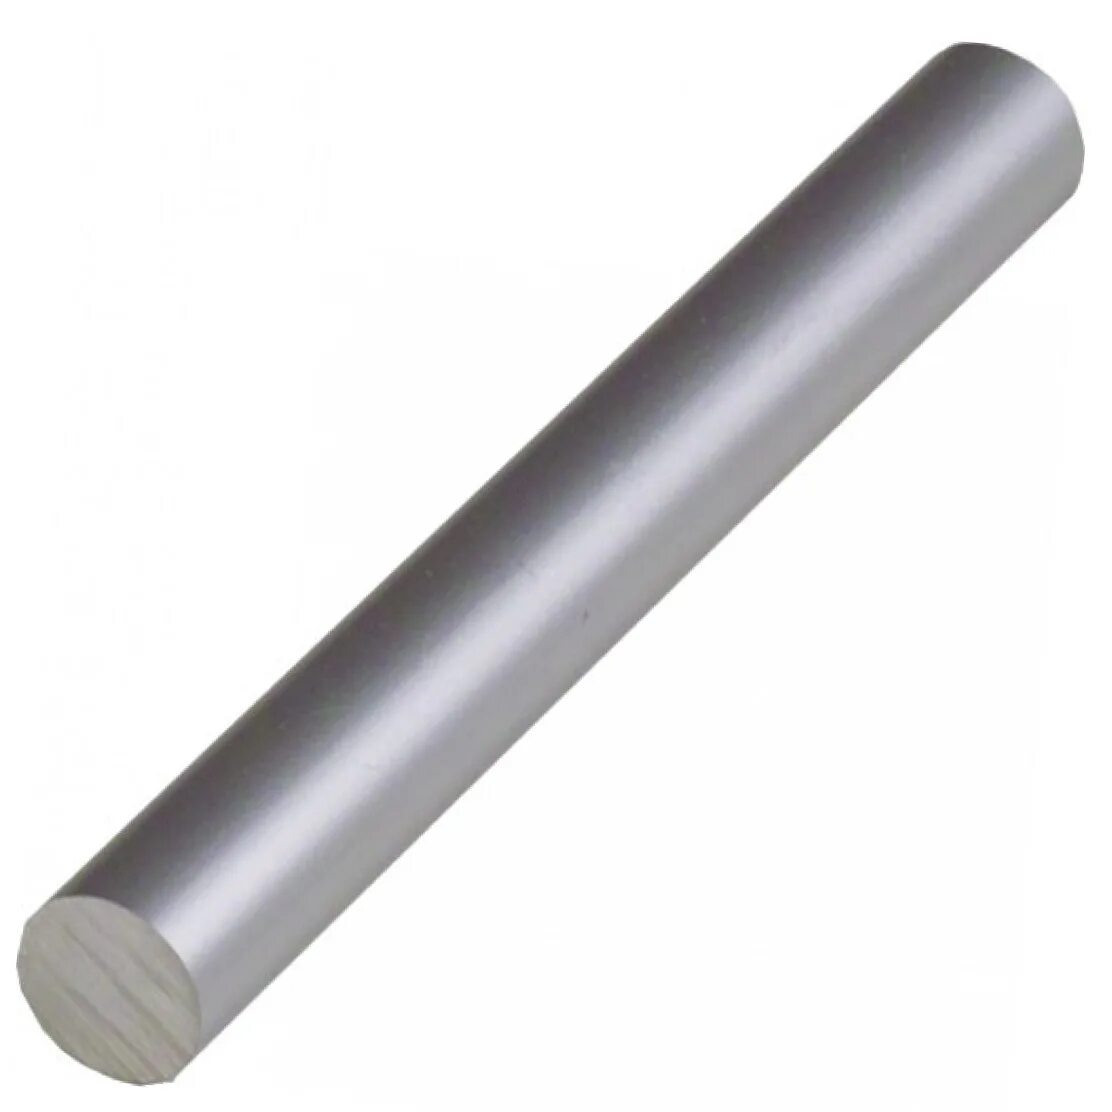 Трубка стальная 7 мм. Пруток алюминиевый FOXWELD Аl МG 5 (er-5356) 2.4 мм 5 кг. Пруток алюминиевый 8мм. Стальная трубка 3,2 мм, 1 шт, KS Precision Metals США, ks87111.